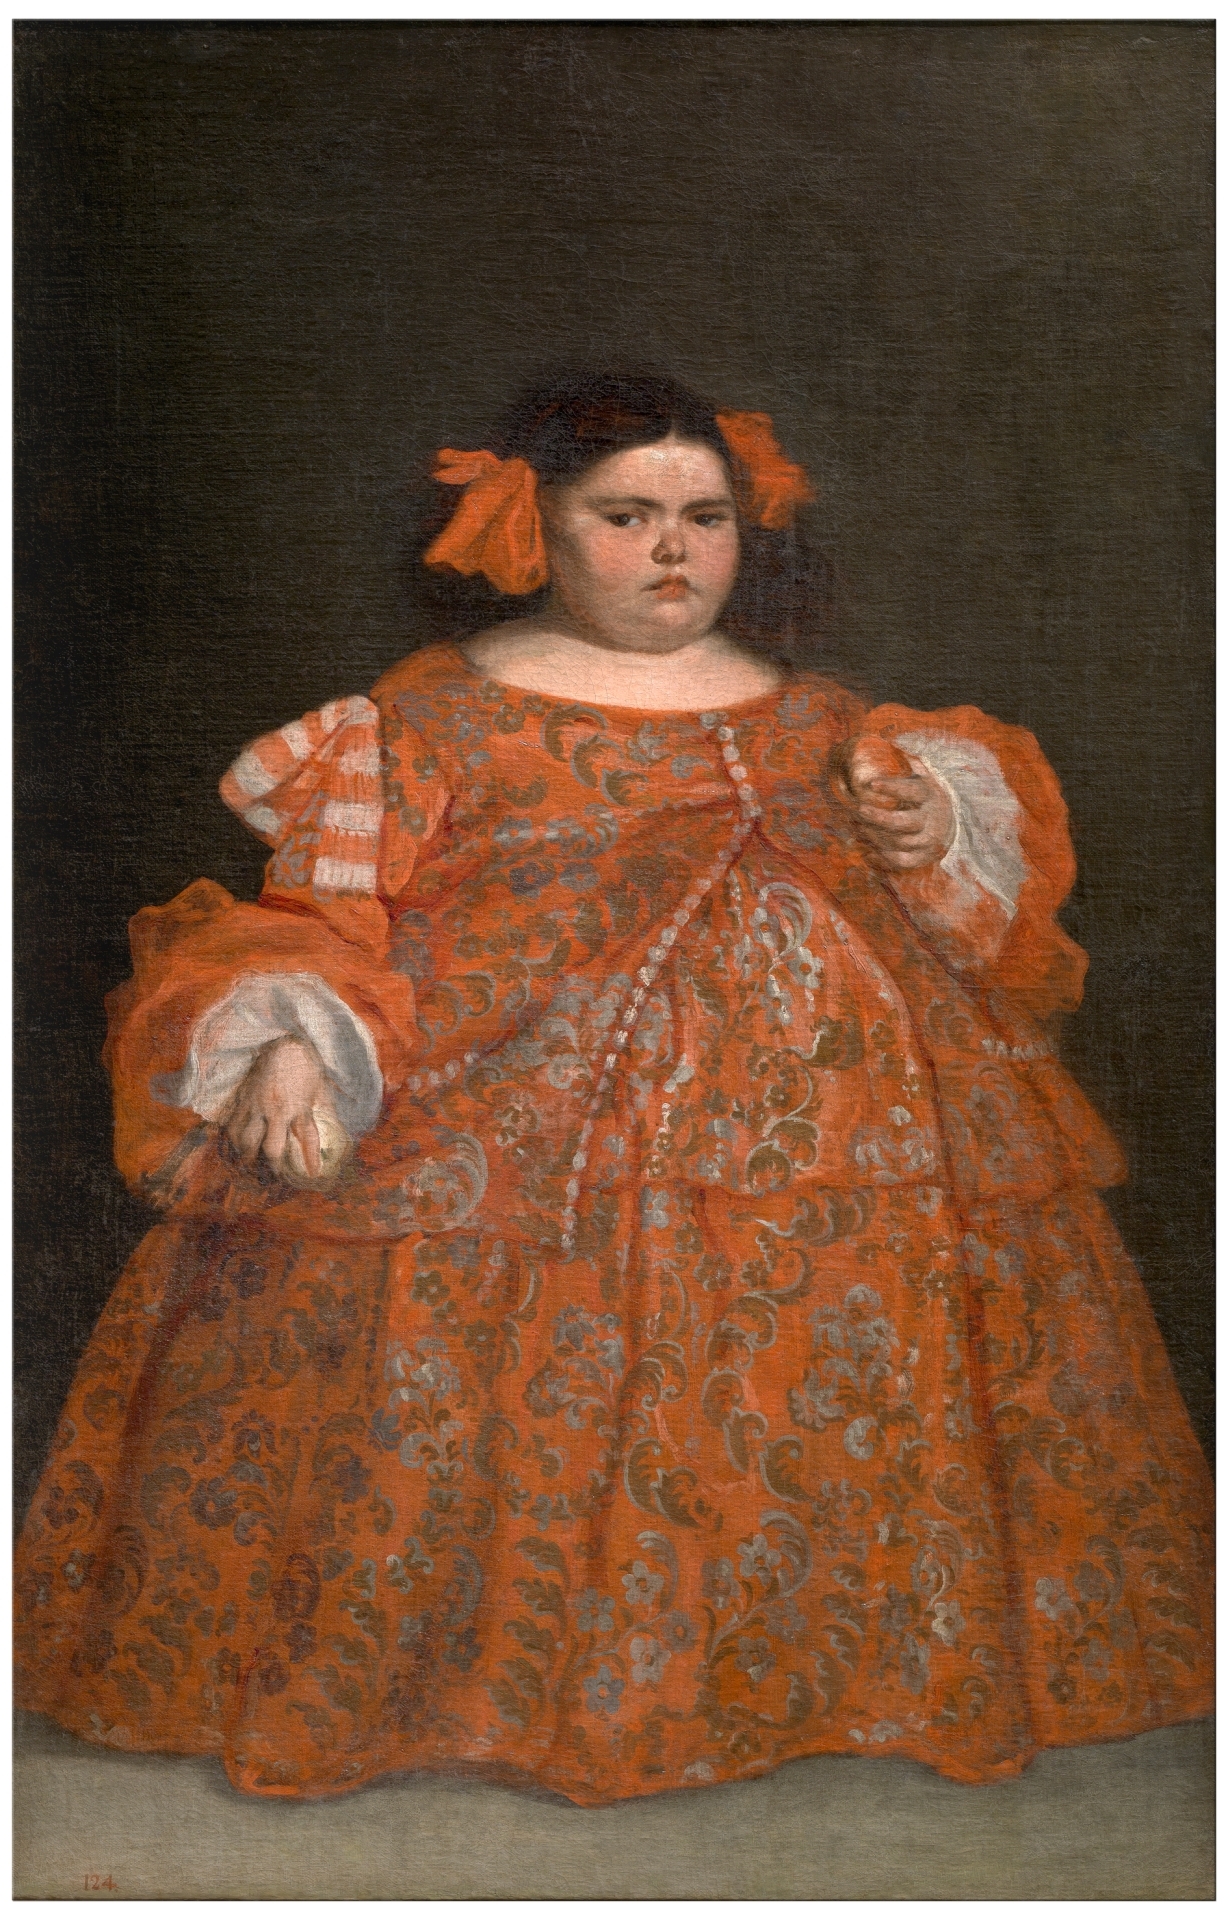 Eugenia Martínez Vallejo, Clothed by Juan Carreño de Miranda - c. 1680 - 165 x 107 cm Museo del Prado